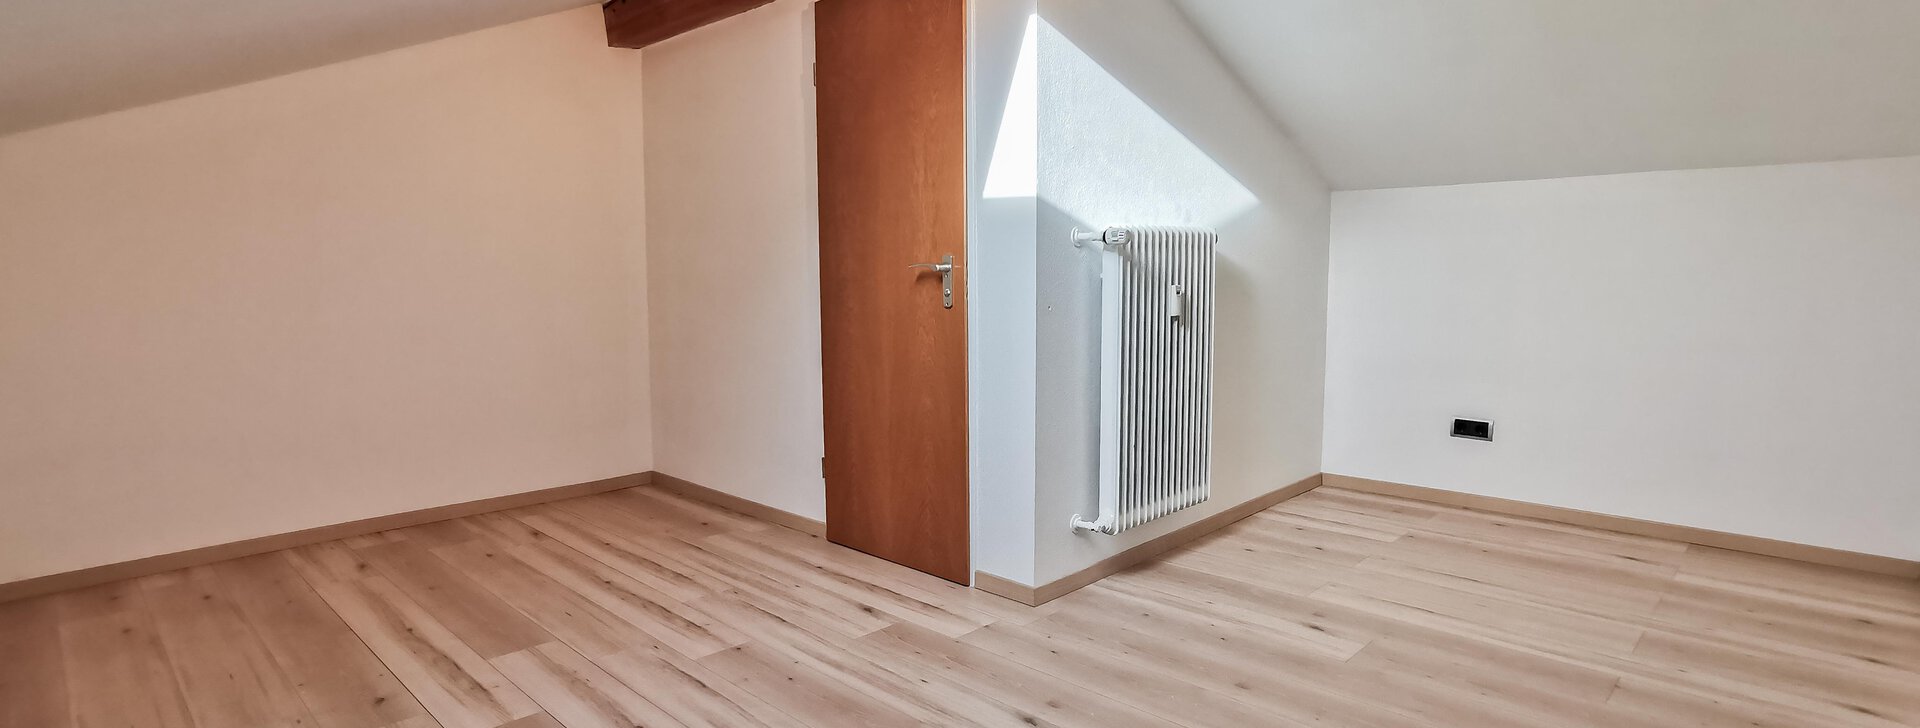 4-Zimmer-Wohnung Siegsdorf | © HausBauHaus GmbH Traunstein